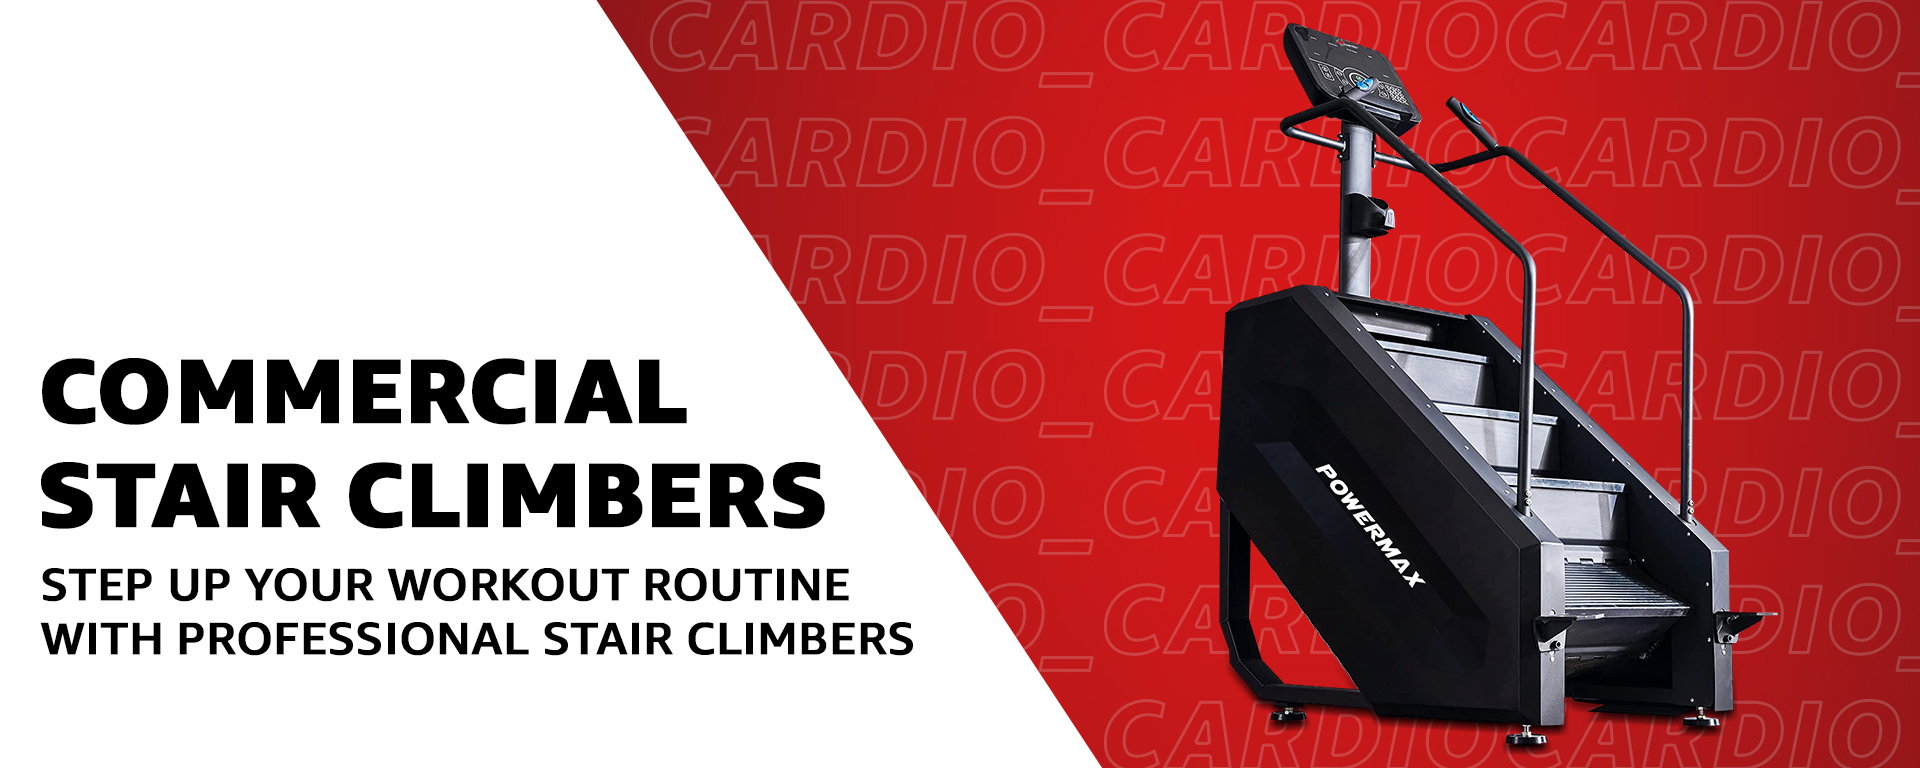 use > cardio > stair climber